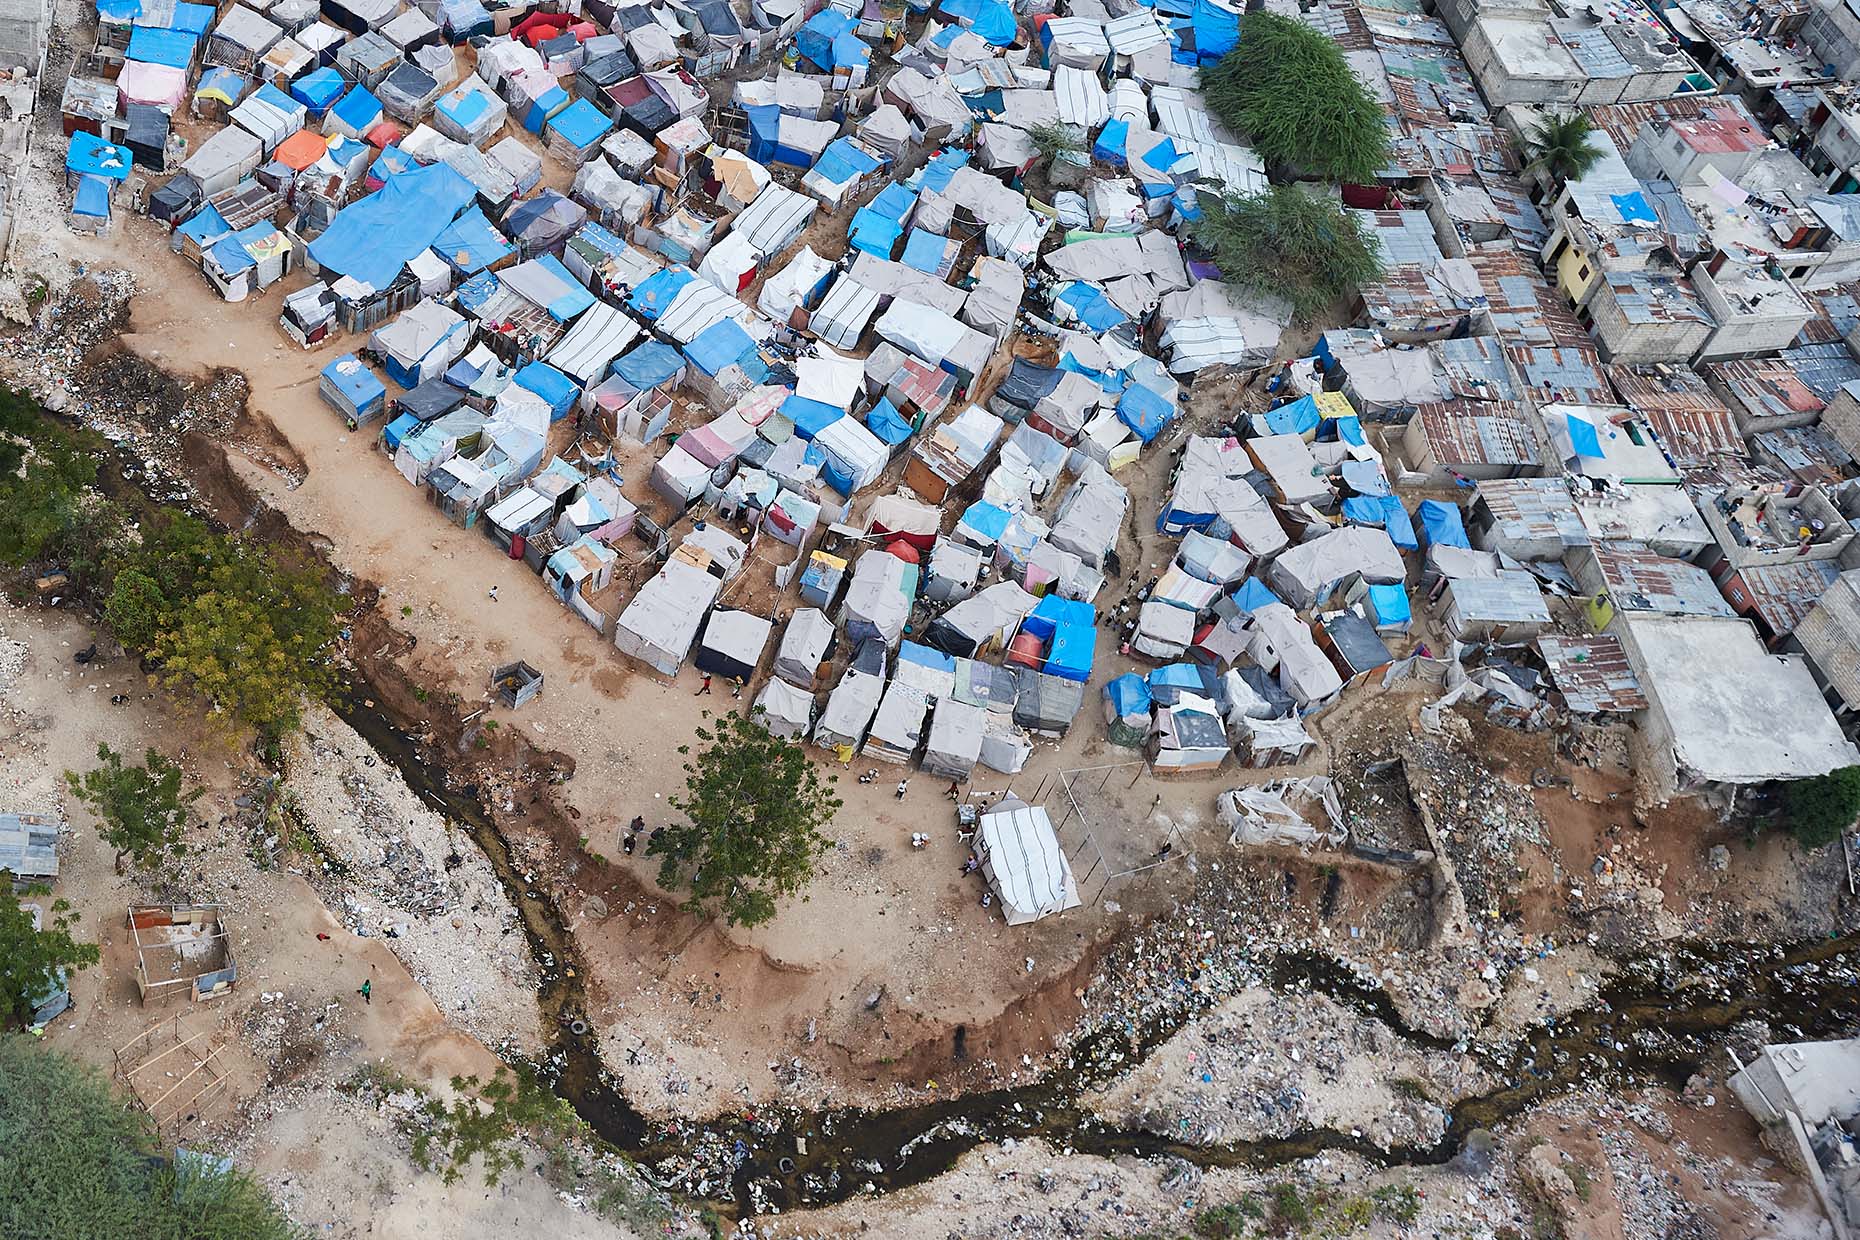 Victims, Tents, Port au Prince - Cameron Davidson